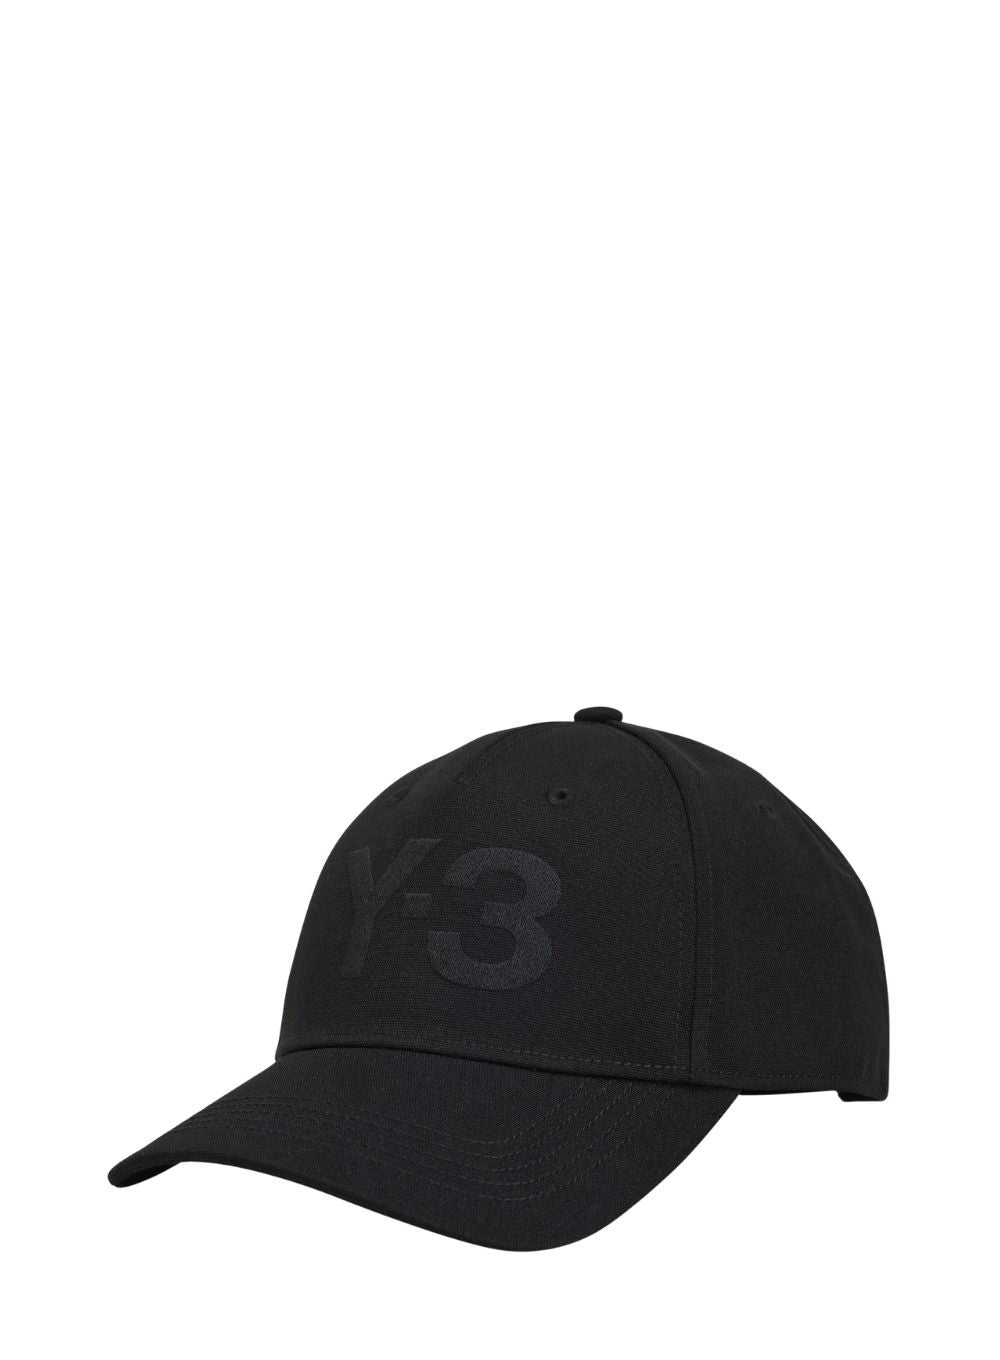 Y-3 Man Hats